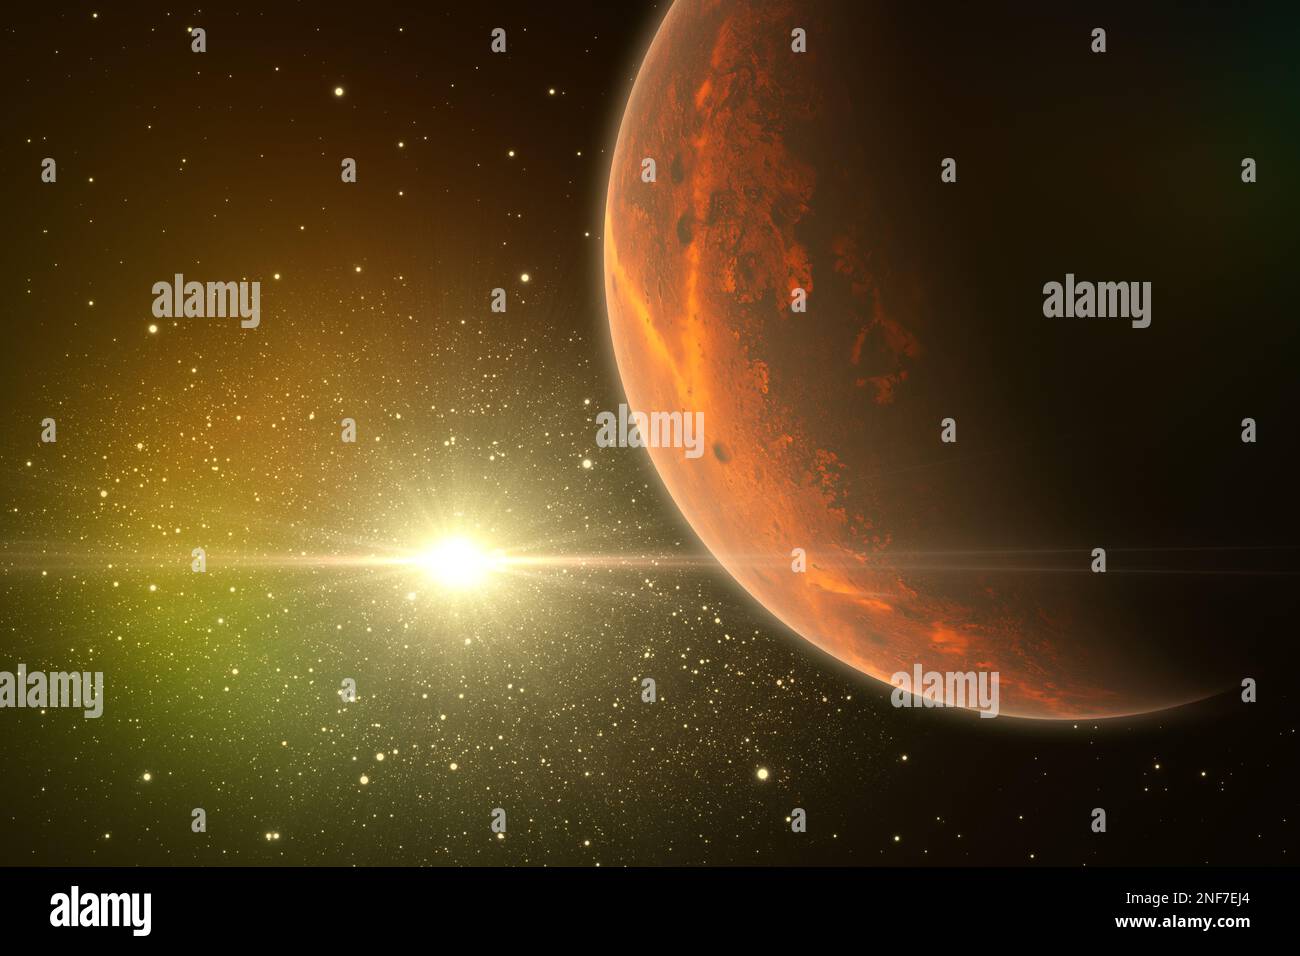 Planète exoplanète ou planète extrasolaire avec Quasar éloigné, noyau galactique actif extrêmement lumineux. 3D illustration Banque D'Images